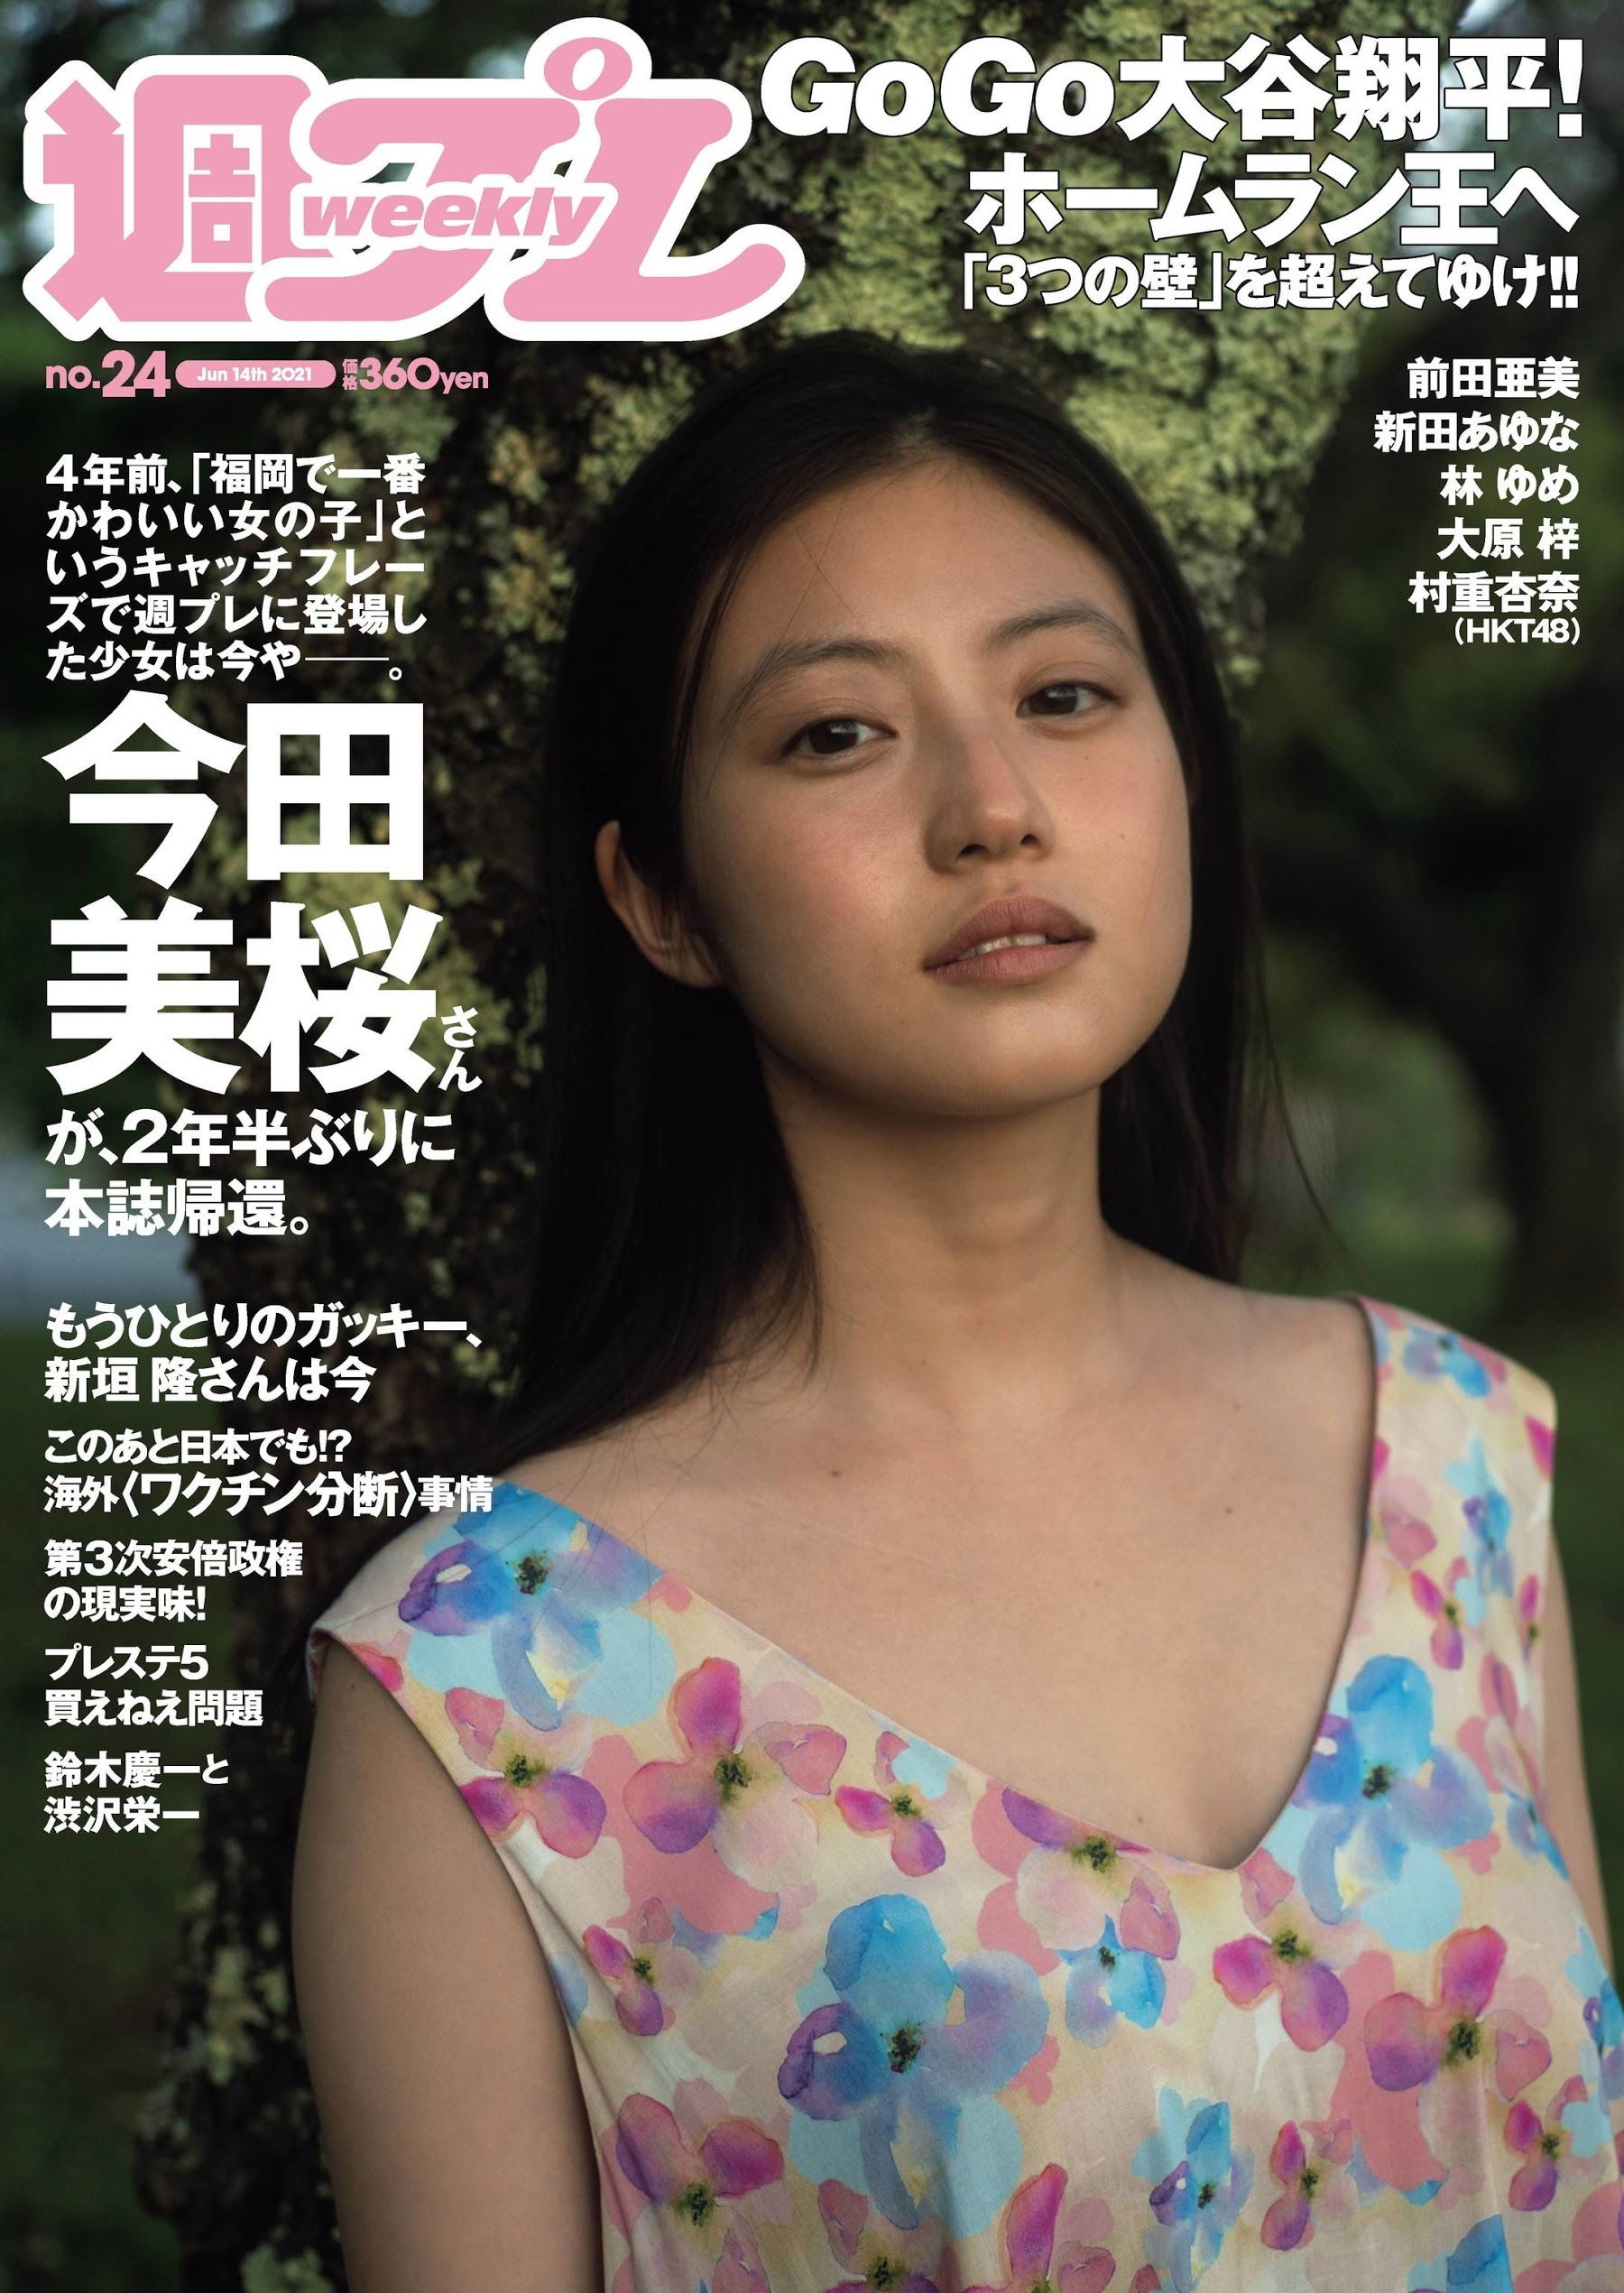 【2021年】Weekly Playboy 第24期 - itotii